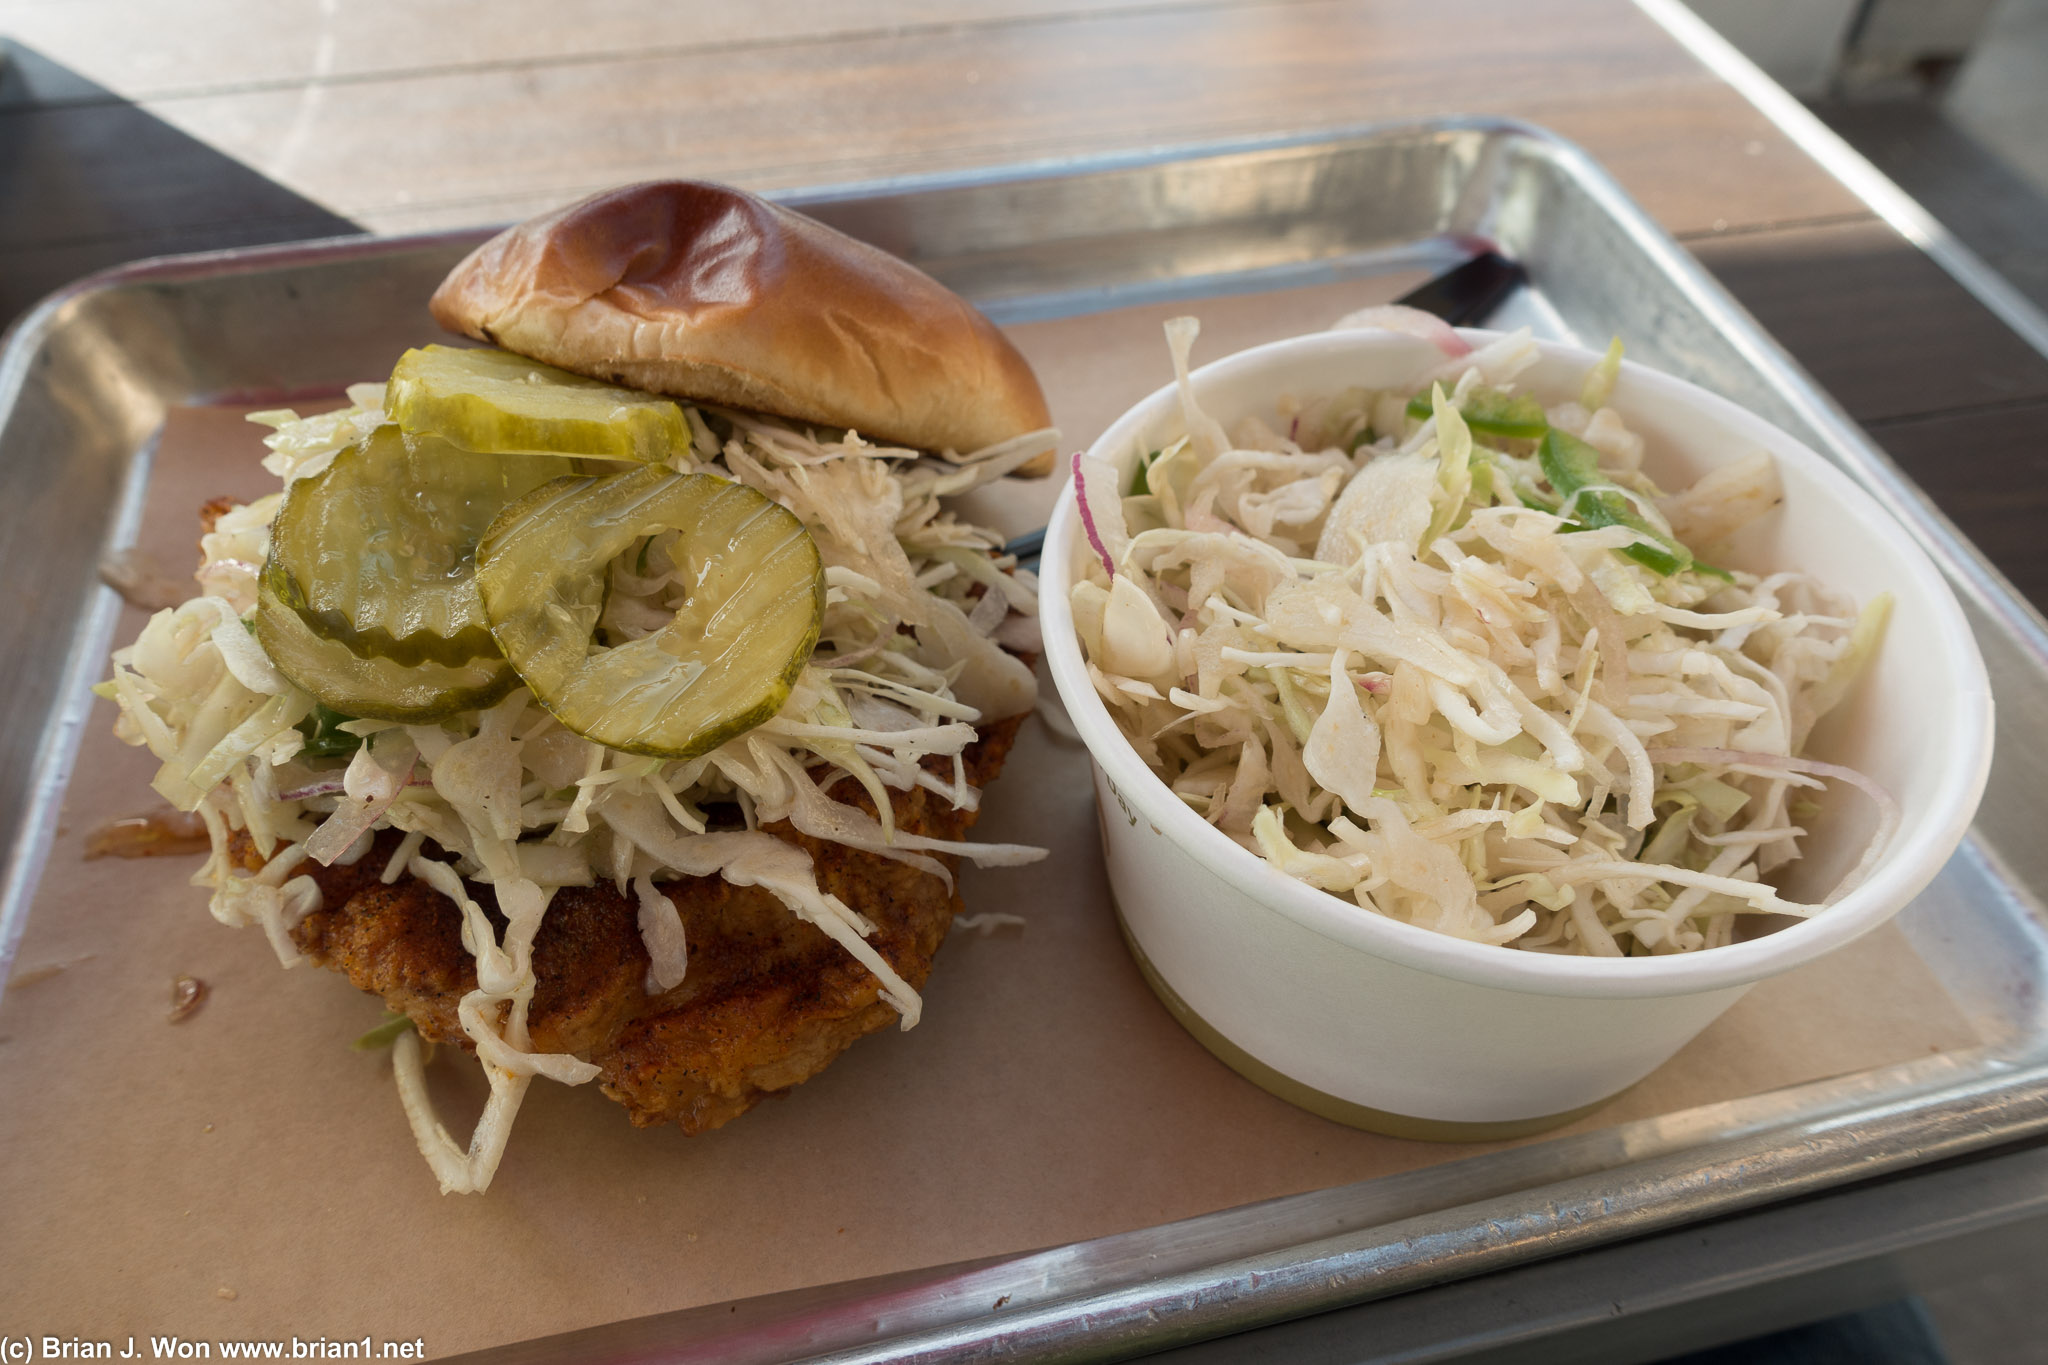 Nashville XL chicken sandwich and coleslaw.